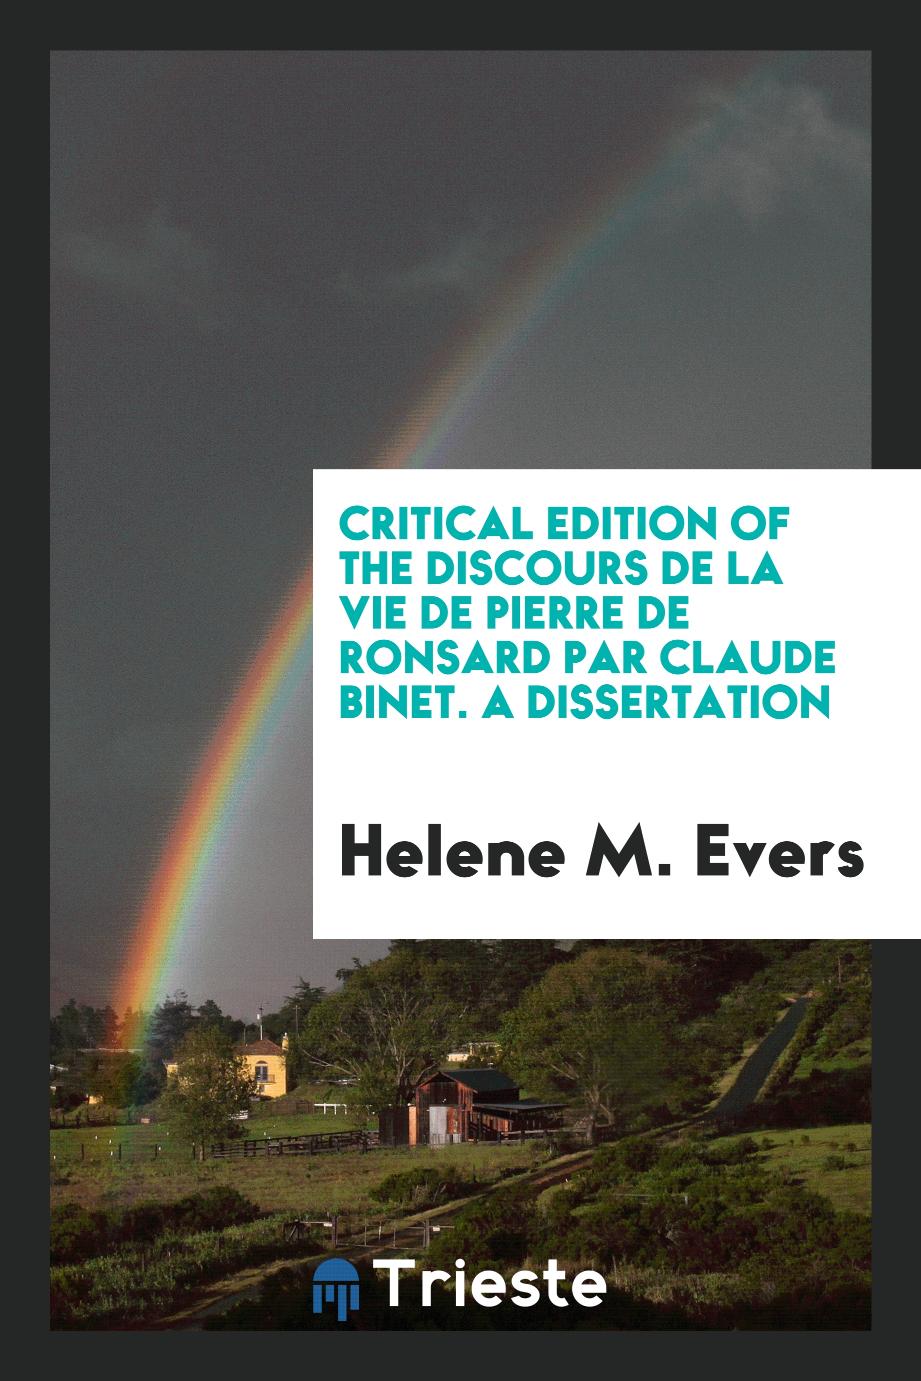 Critical edition of the Discours de la vie de Pierre de Ronsard par Claude Binet. A dissertation